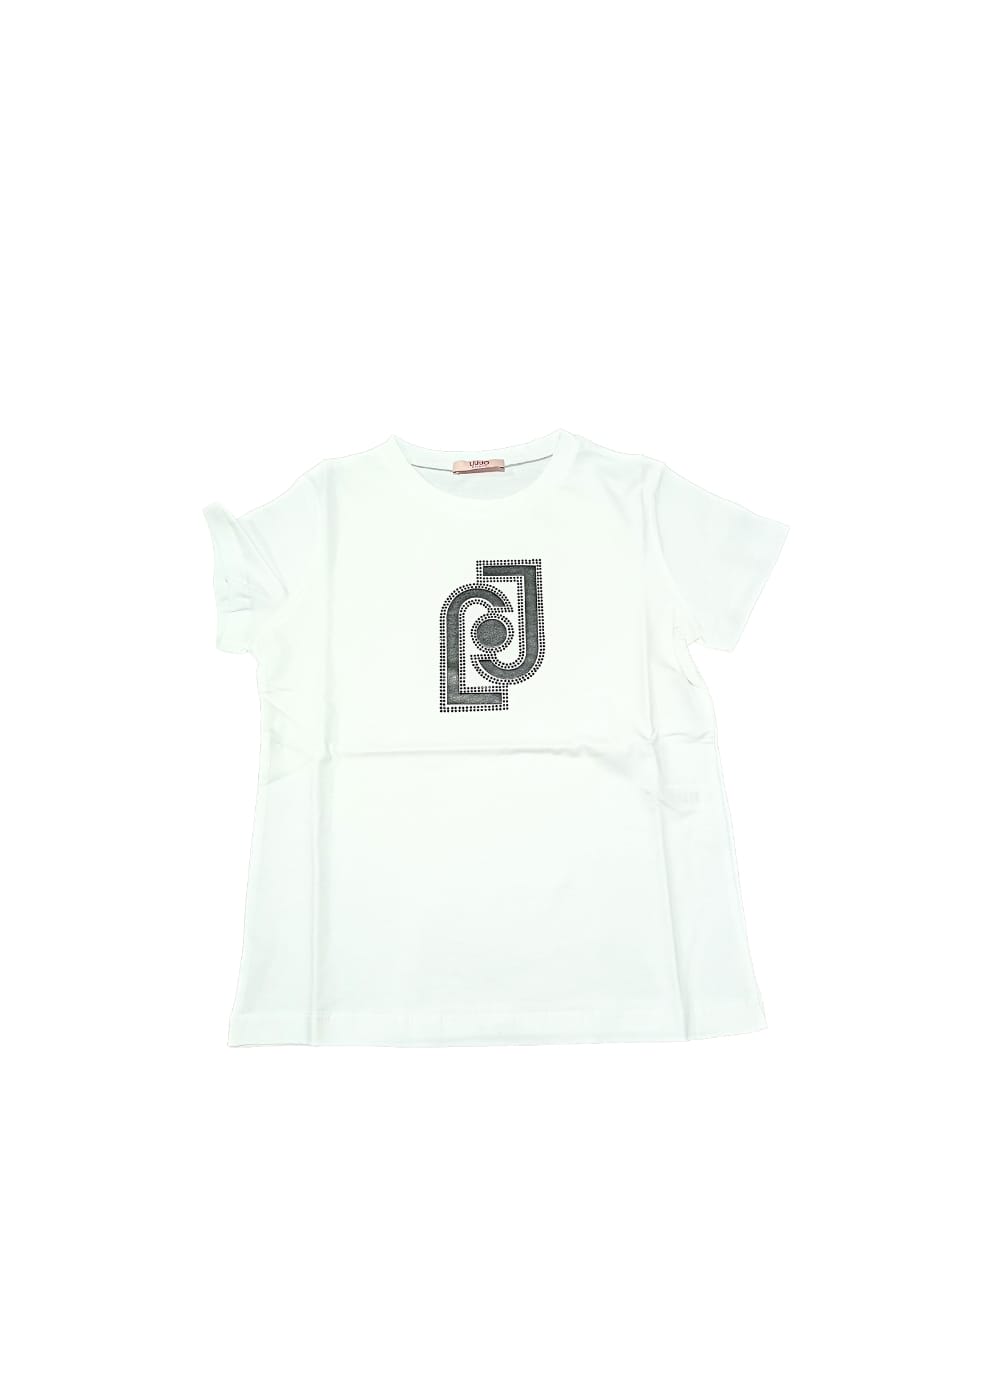 Featured image for “Liu Jo T-shirt Logo”